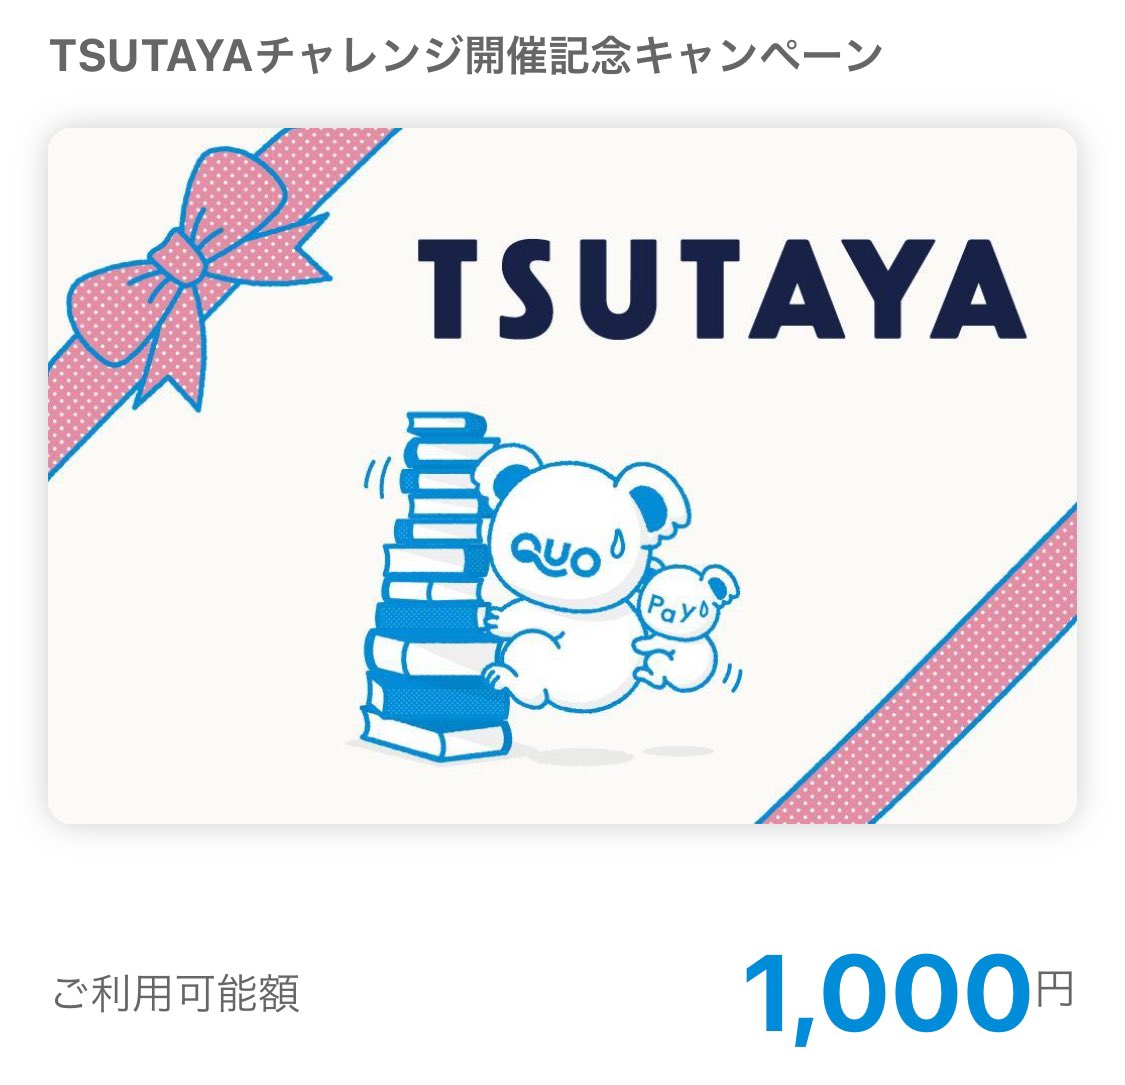 ＠shop_TSUTAYA様から

「TSUTAYAチャレンジ開催記念！QUOカードPay1,000円分プレゼントキャンペーン」
にて
QUOカードPay1000円分頂きました⸜🙌🏻⸝

何に使おうかな💭

#ととまる当選報告